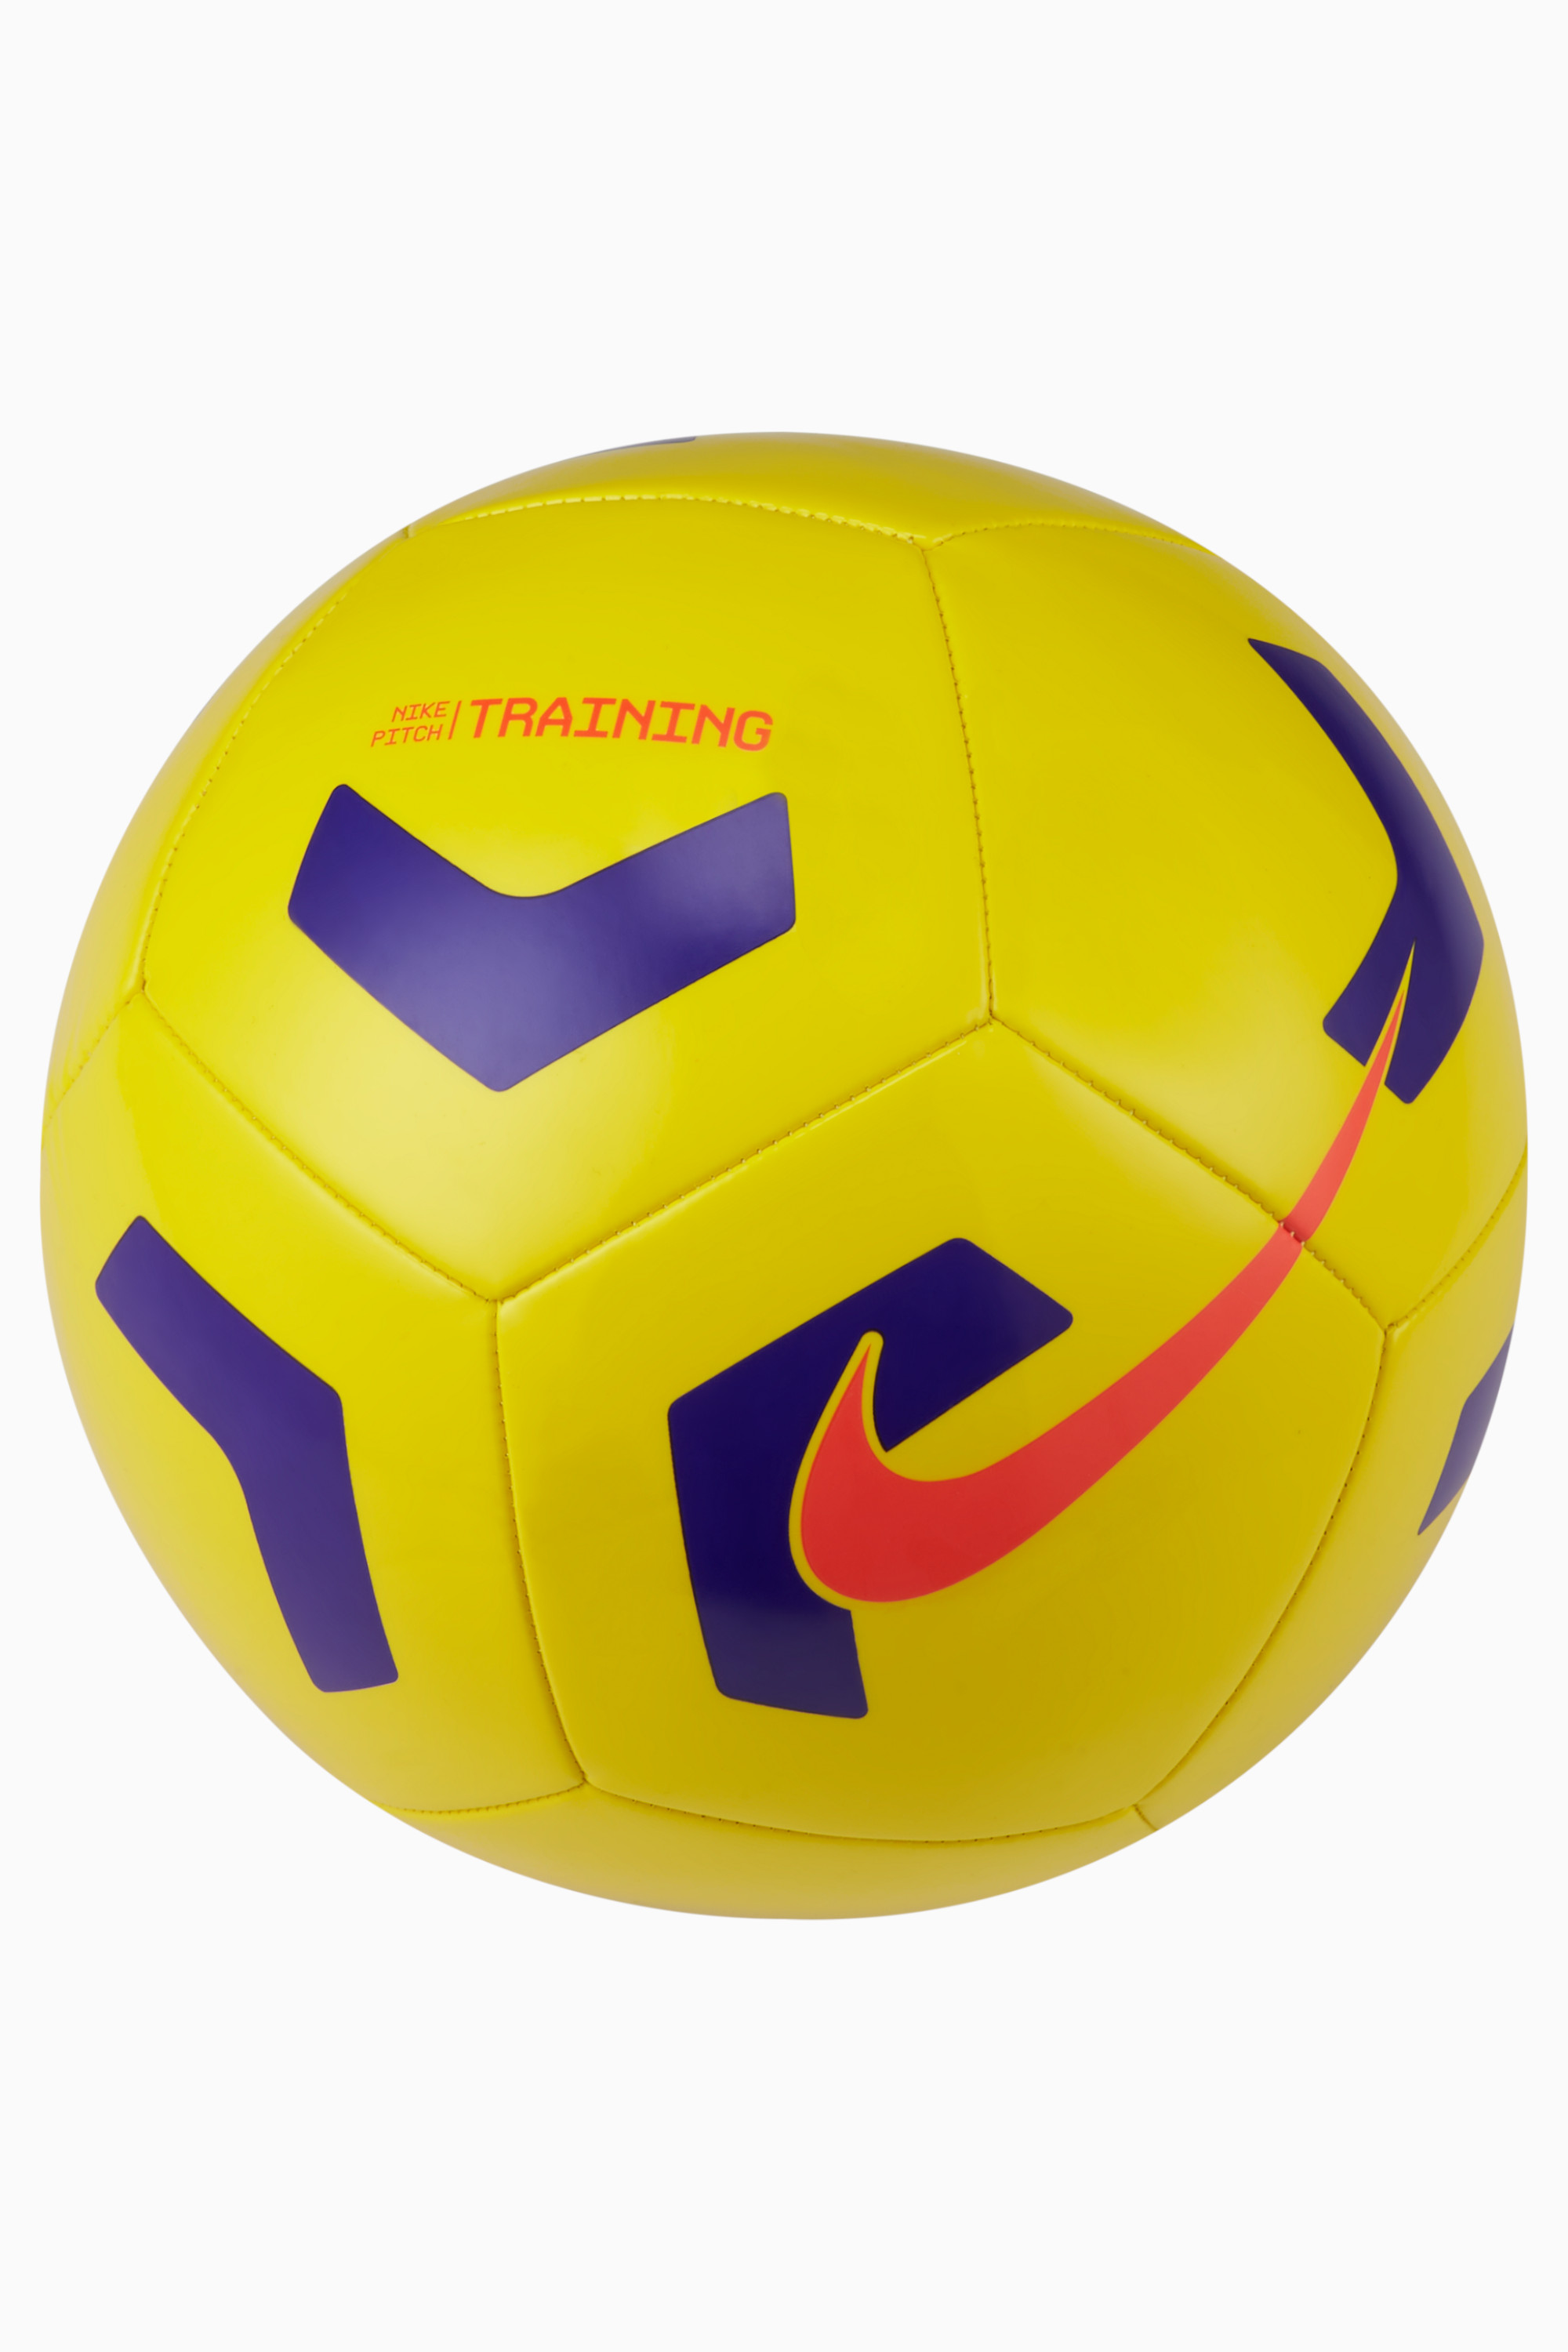 nike training balls size 5